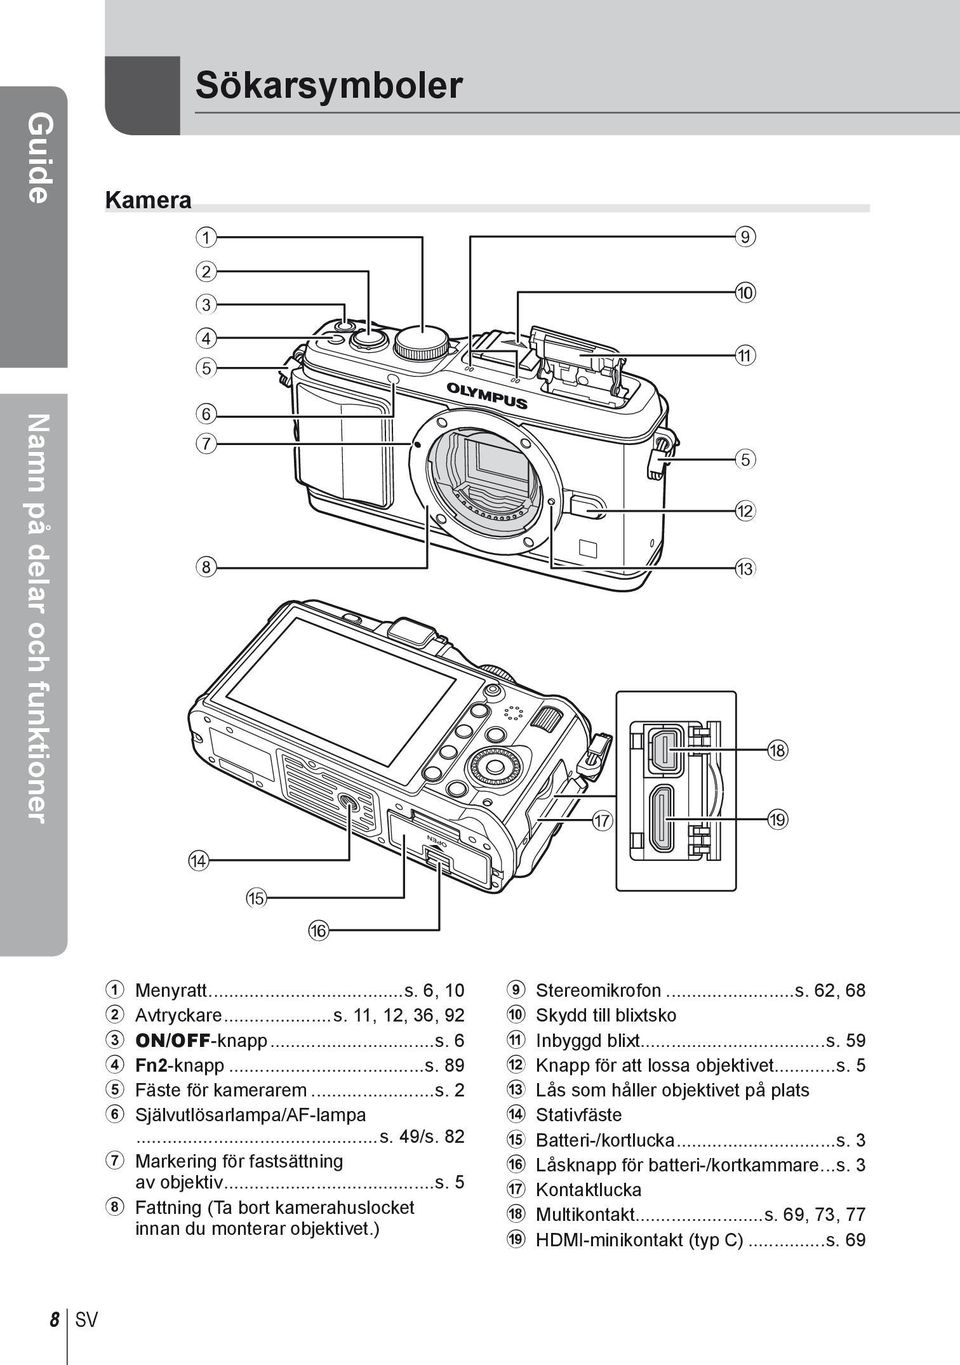 ) 9 Stereomikrofon...s. 62, 68 0 Skydd till blixtsko a Inbyggd blixt...s. 59 b Knapp för att lossa objektivet...s. 5 c Lås som håller objektivet på plats d Stativfäste e Batteri-/kortlucka.